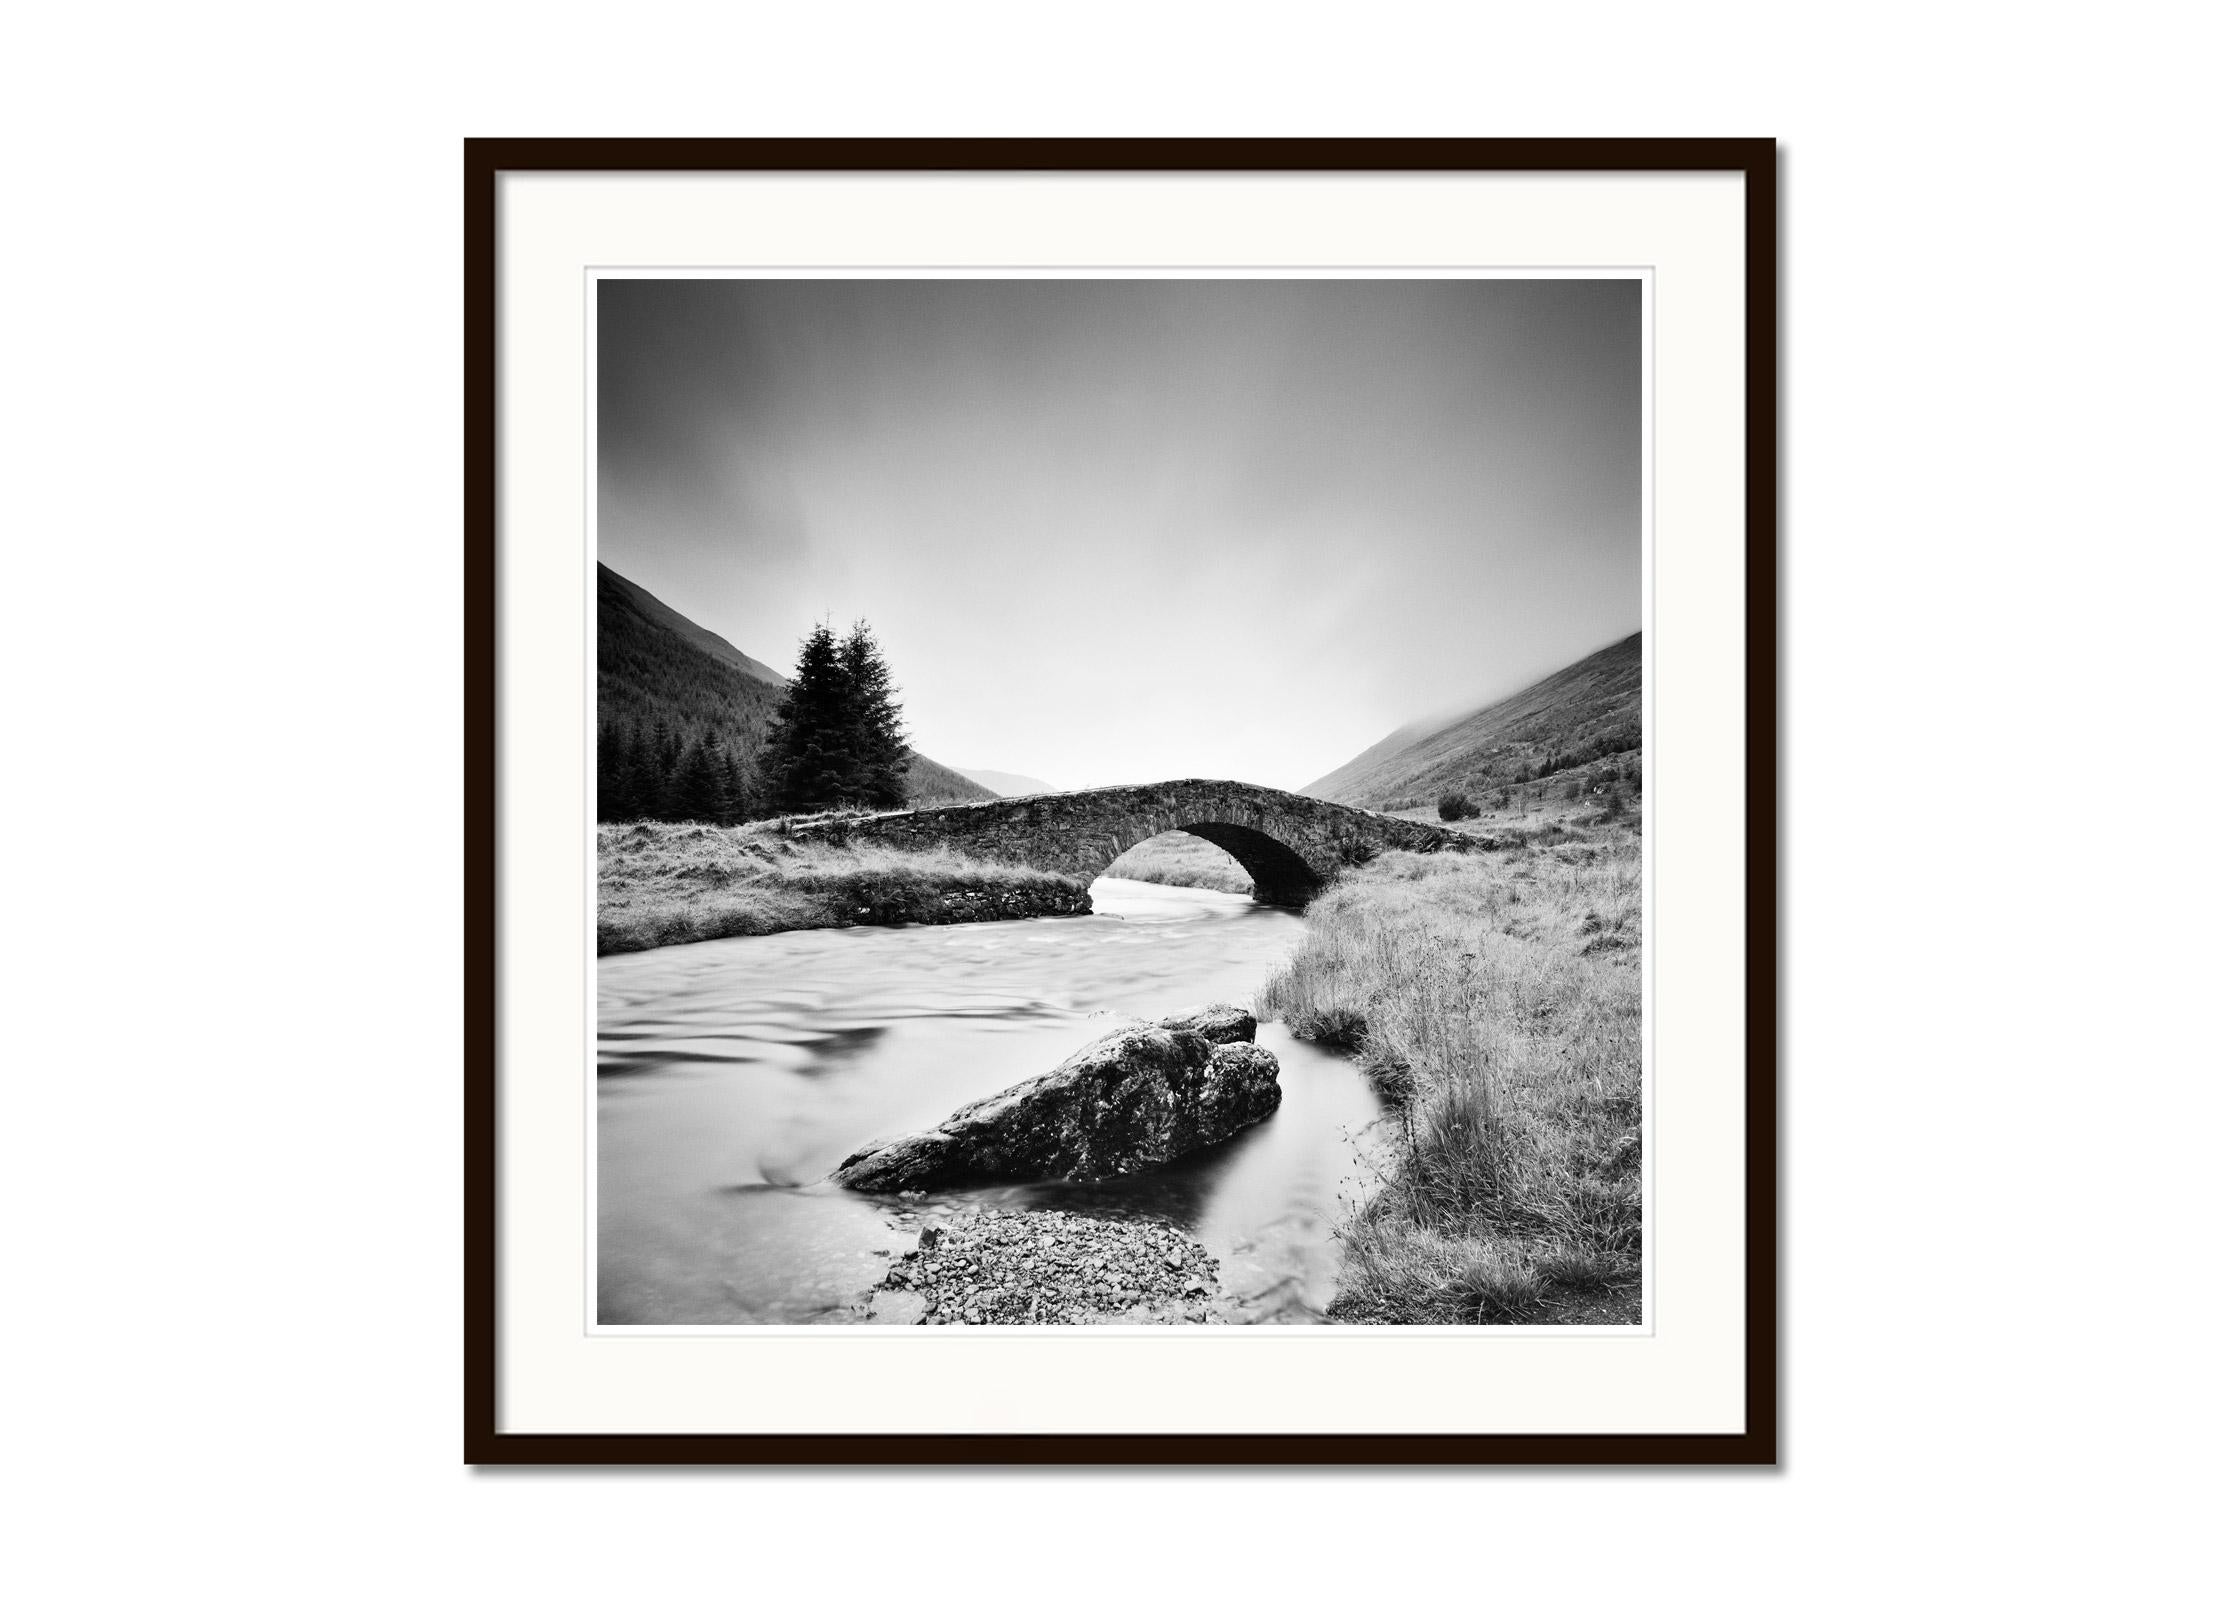 Stone Bridge, Highlands, Schottland, Schwarz-Weiß-Landschaftsfotografie (Grau), Landscape Photograph, von Gerald Berghammer